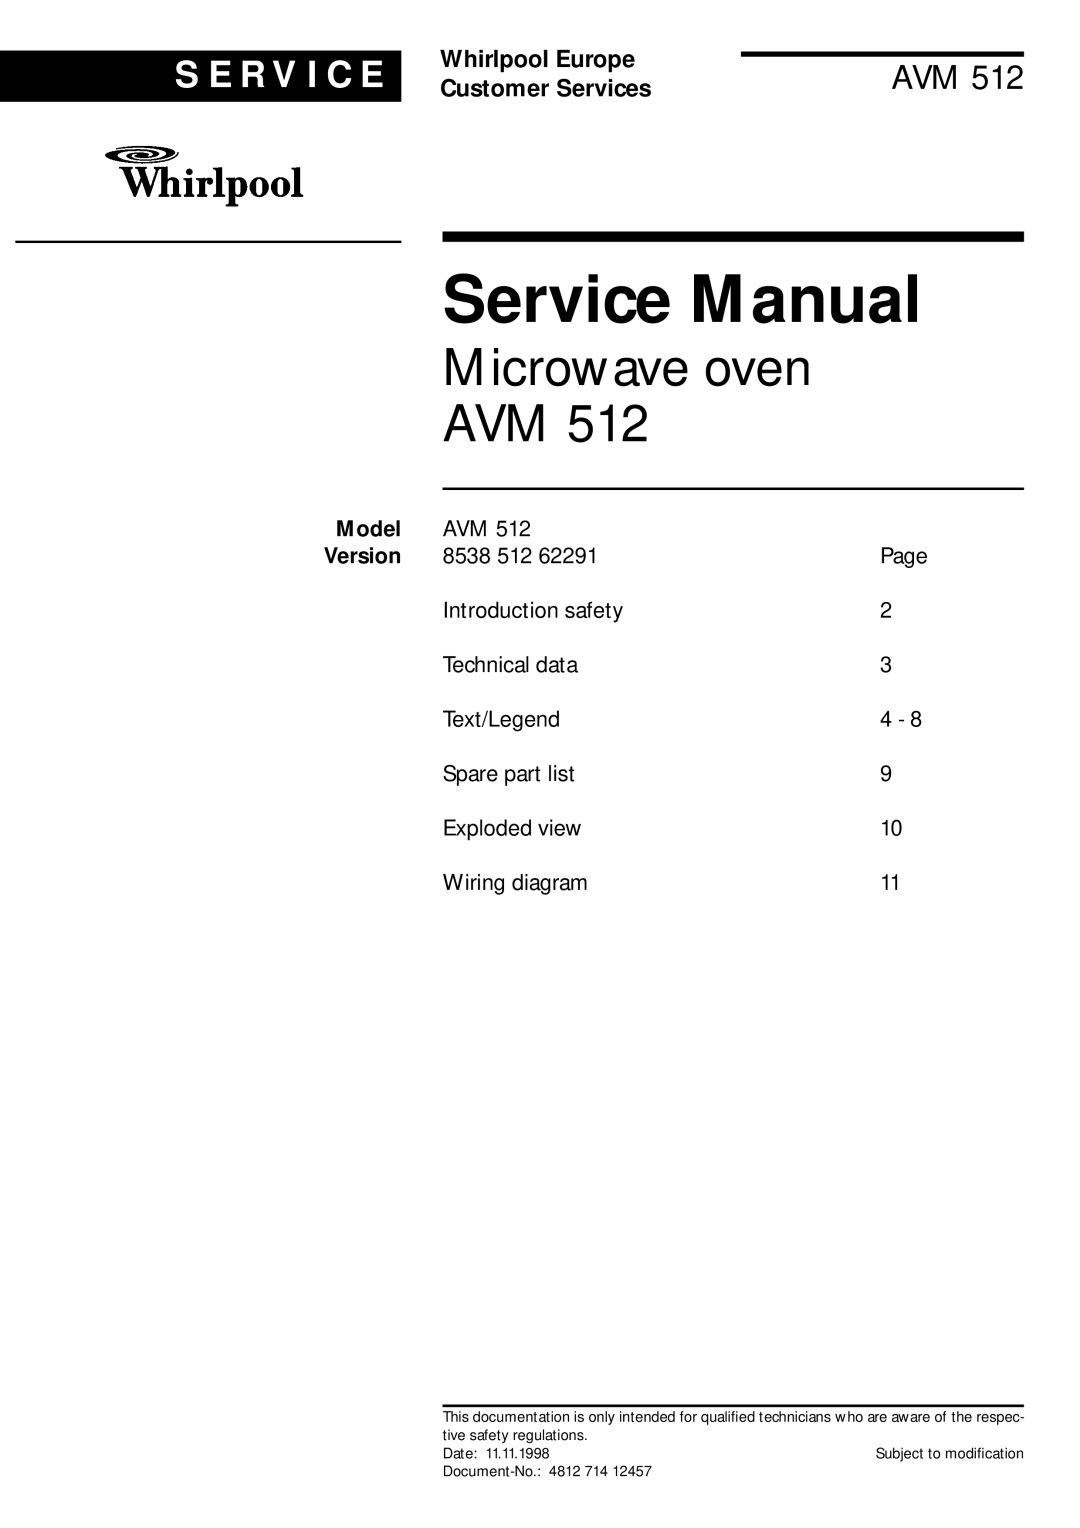 Whirlpool AVM 512 service manual Model, Microwave oven AVM, S E R V I C E, Whirlpool Europe, Customer Services 